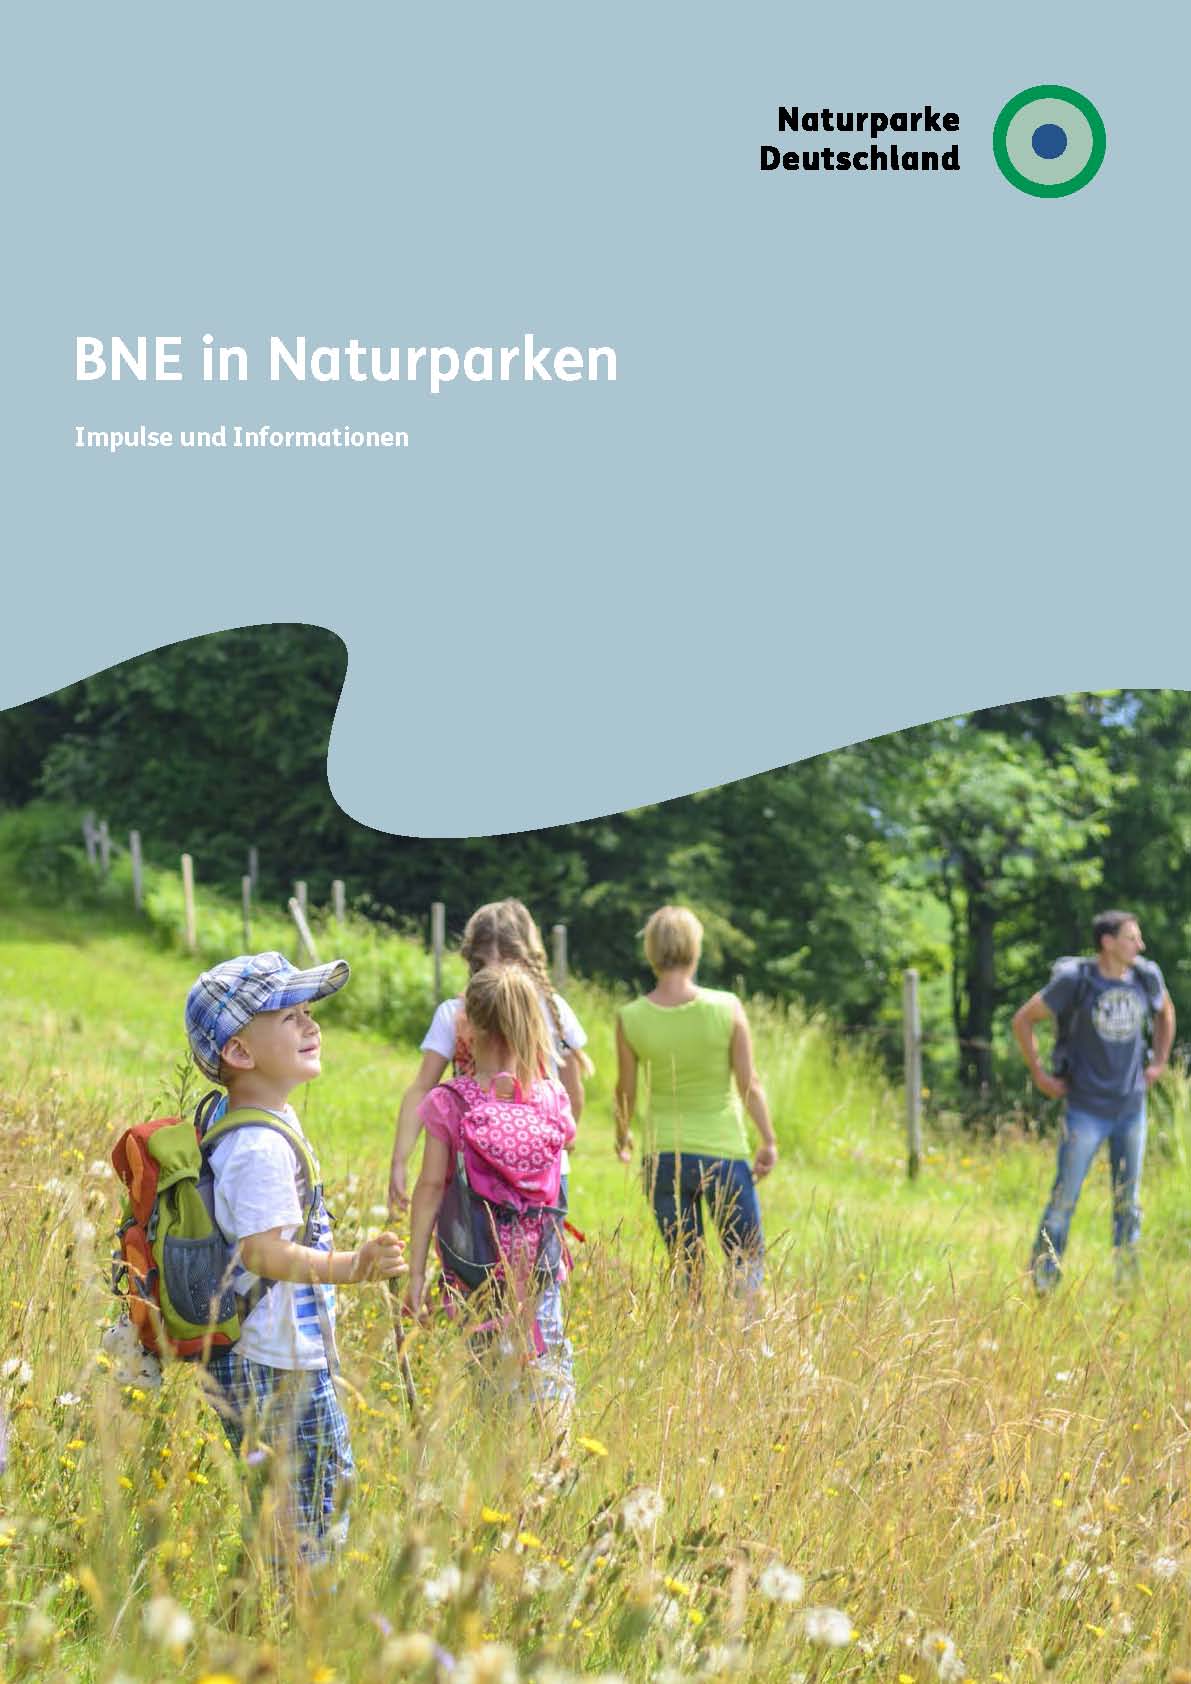 Titelblatt des Leitfadens zu BNE in Naturparken mit dem Bild einer Familie auf einer Wiese